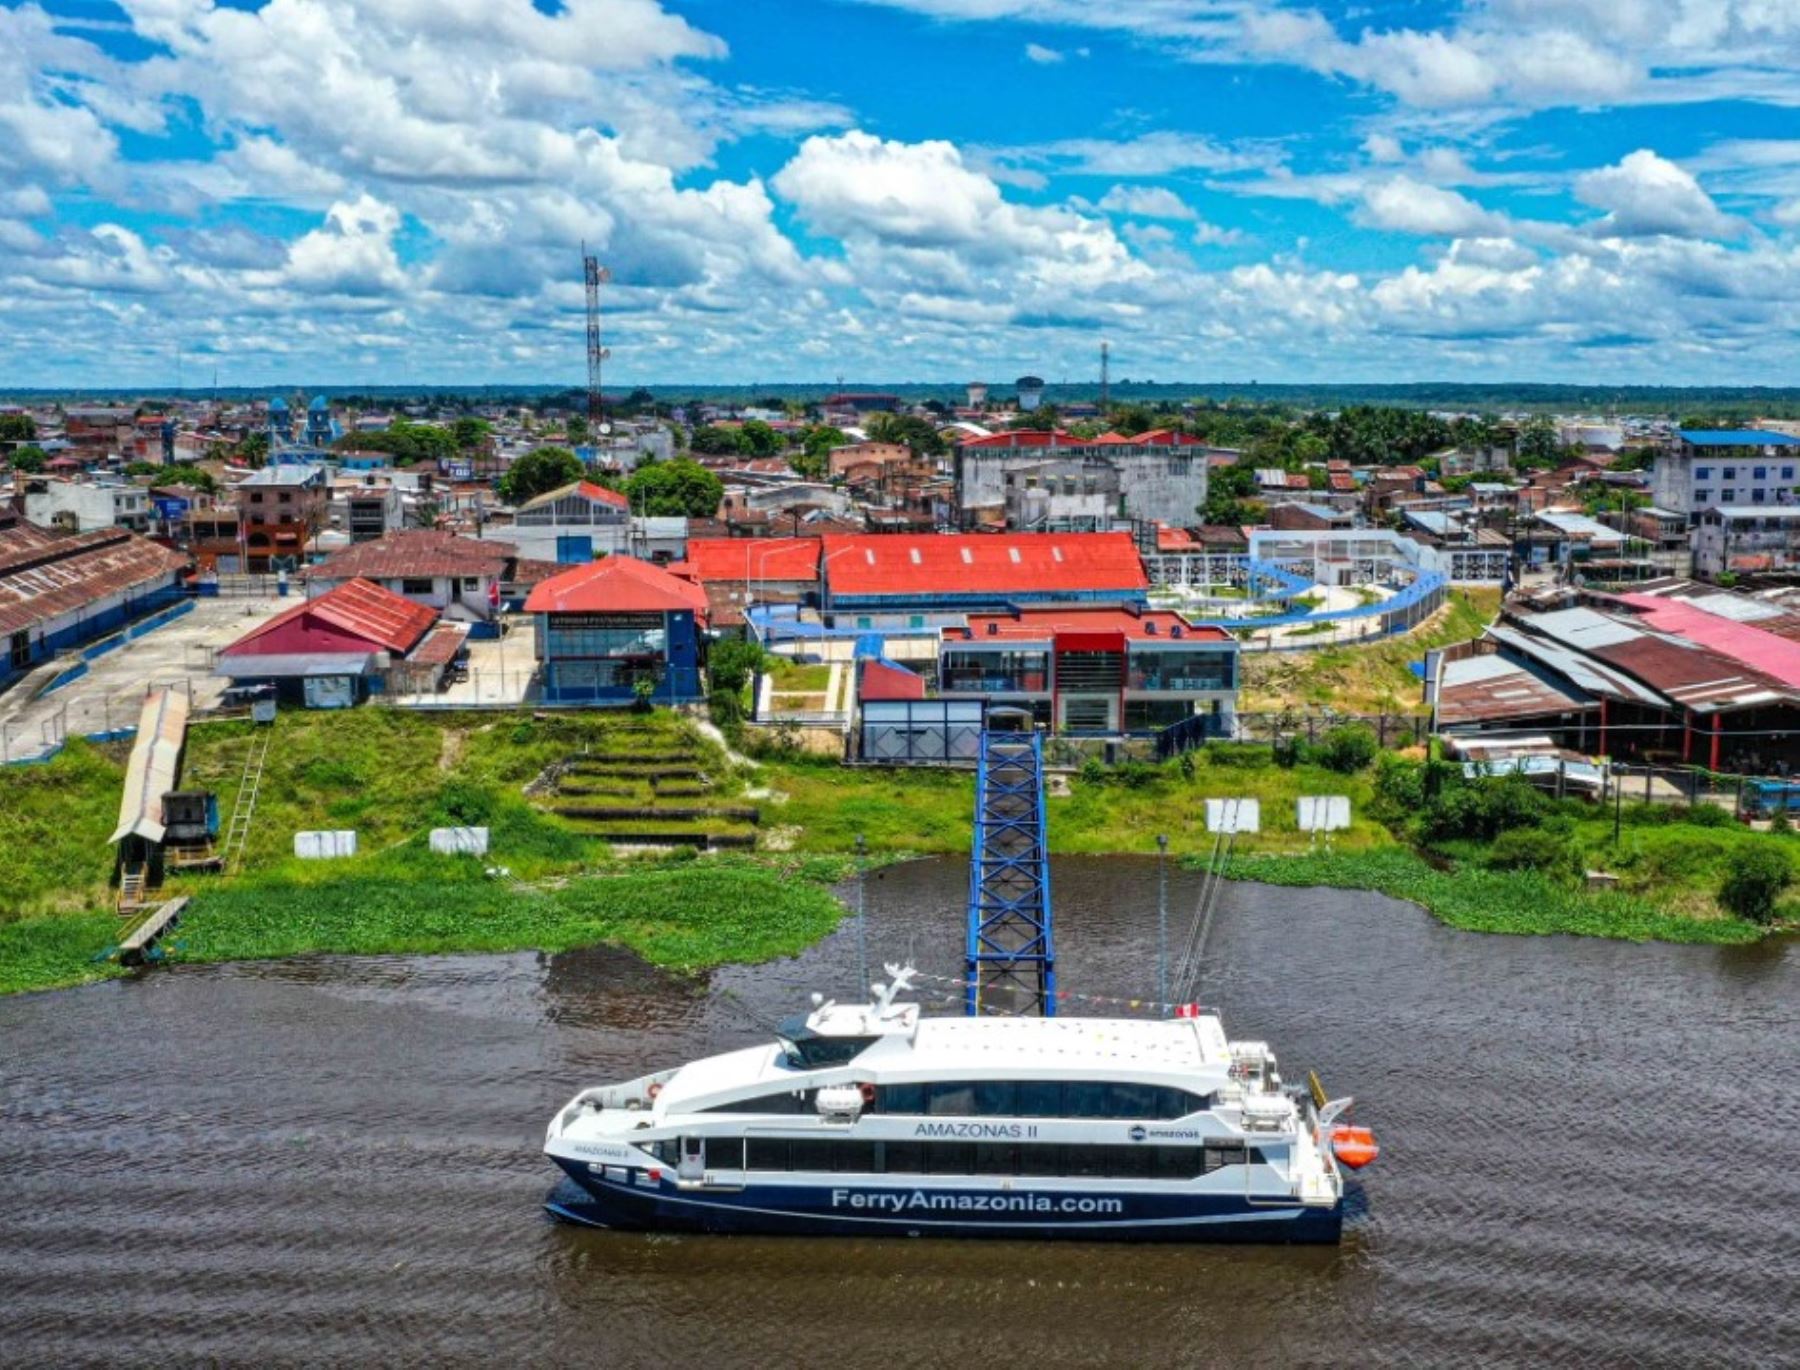 Nuevo ferry Amazonas II se prepara para iniciar servicio de transporte fluvial de pasajeros en Loreto, informó el MTC.